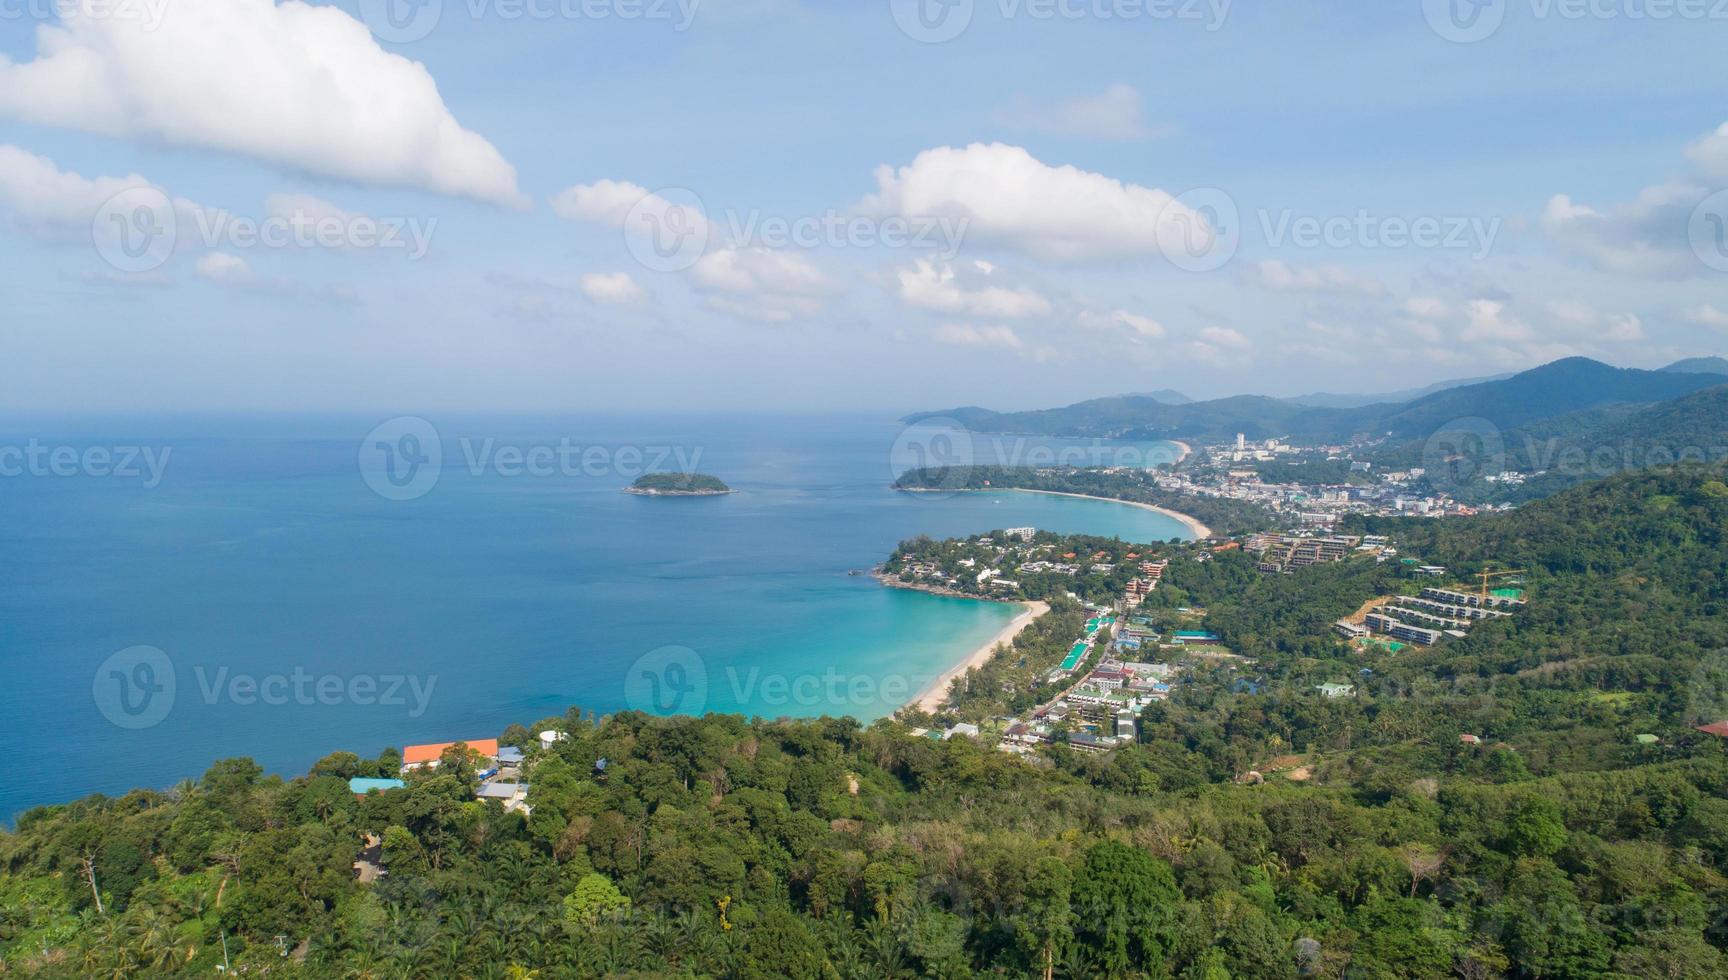 vue aérienne prise de vue aérienne d'un magnifique paysage 3 baies point de vue à kata, point de vue de la plage de karon sur l'île de phuket en thaïlande, beau point de repère lieu de voyage point de vue nature à phuket en thaïlande photo